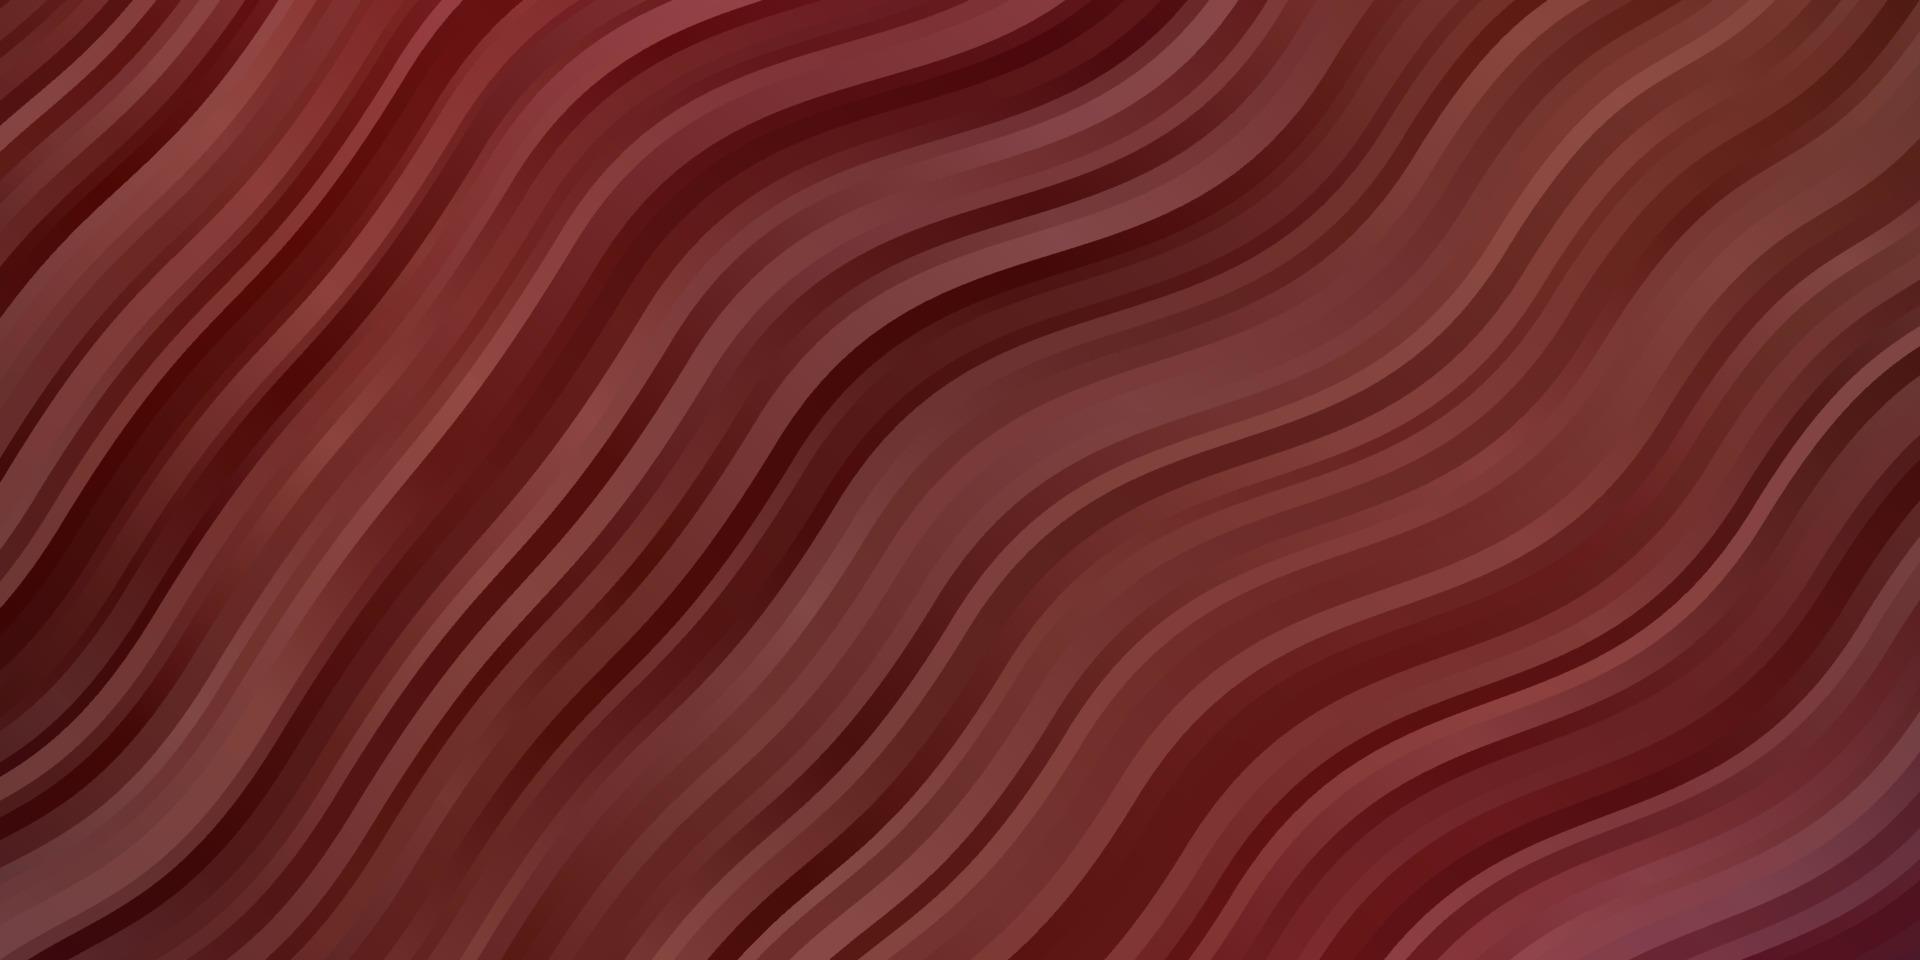 patrón de vector rojo oscuro con líneas curvas.